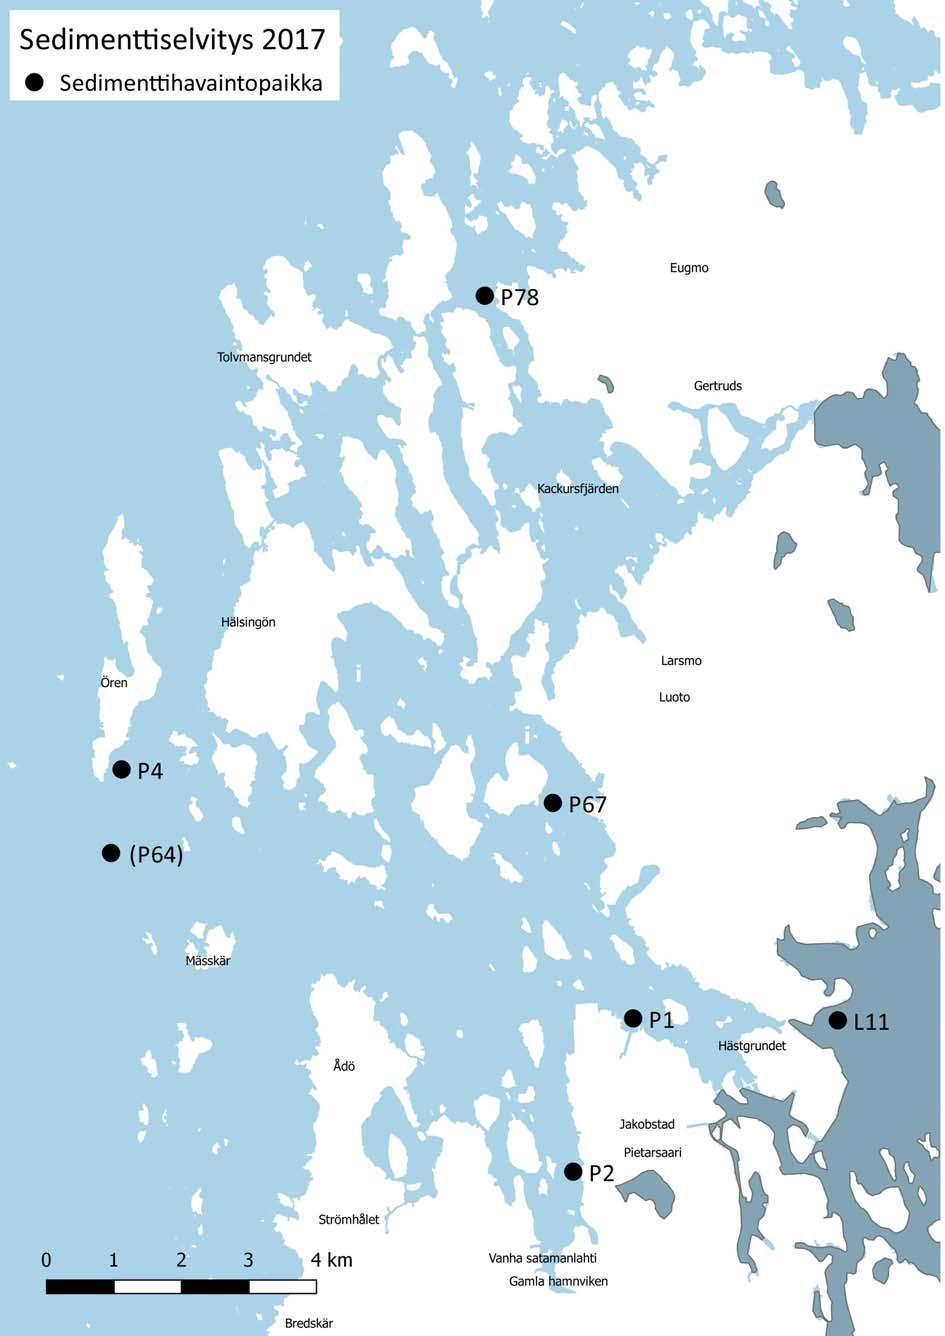 Liite/ Bilaga 1 Pietarsaaren edustan sedimenttiselvityksen havaintopisteet vuonna 17.